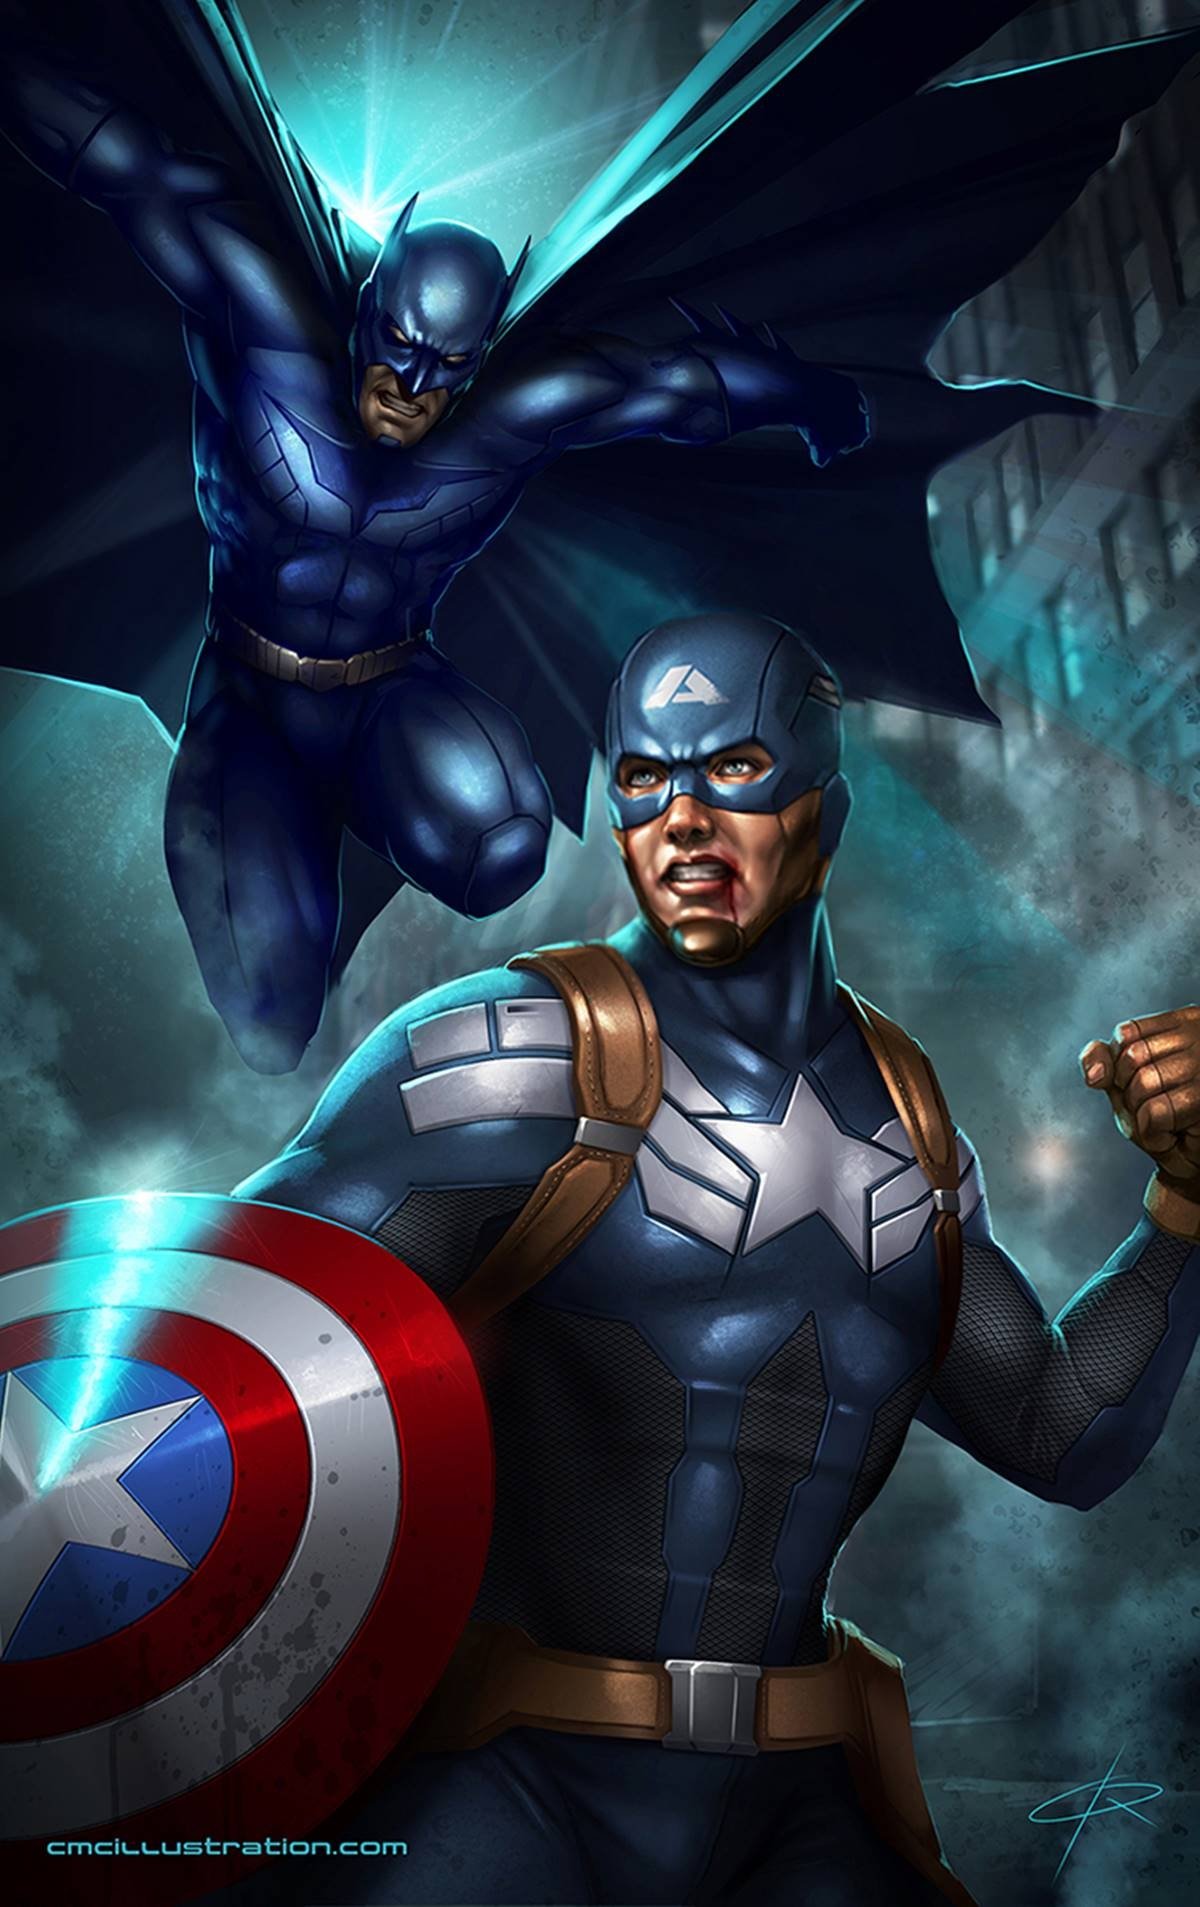 Capitán América vs Batman: el fanart que rivaliza los superhéroes más queridos de Marvel y DC